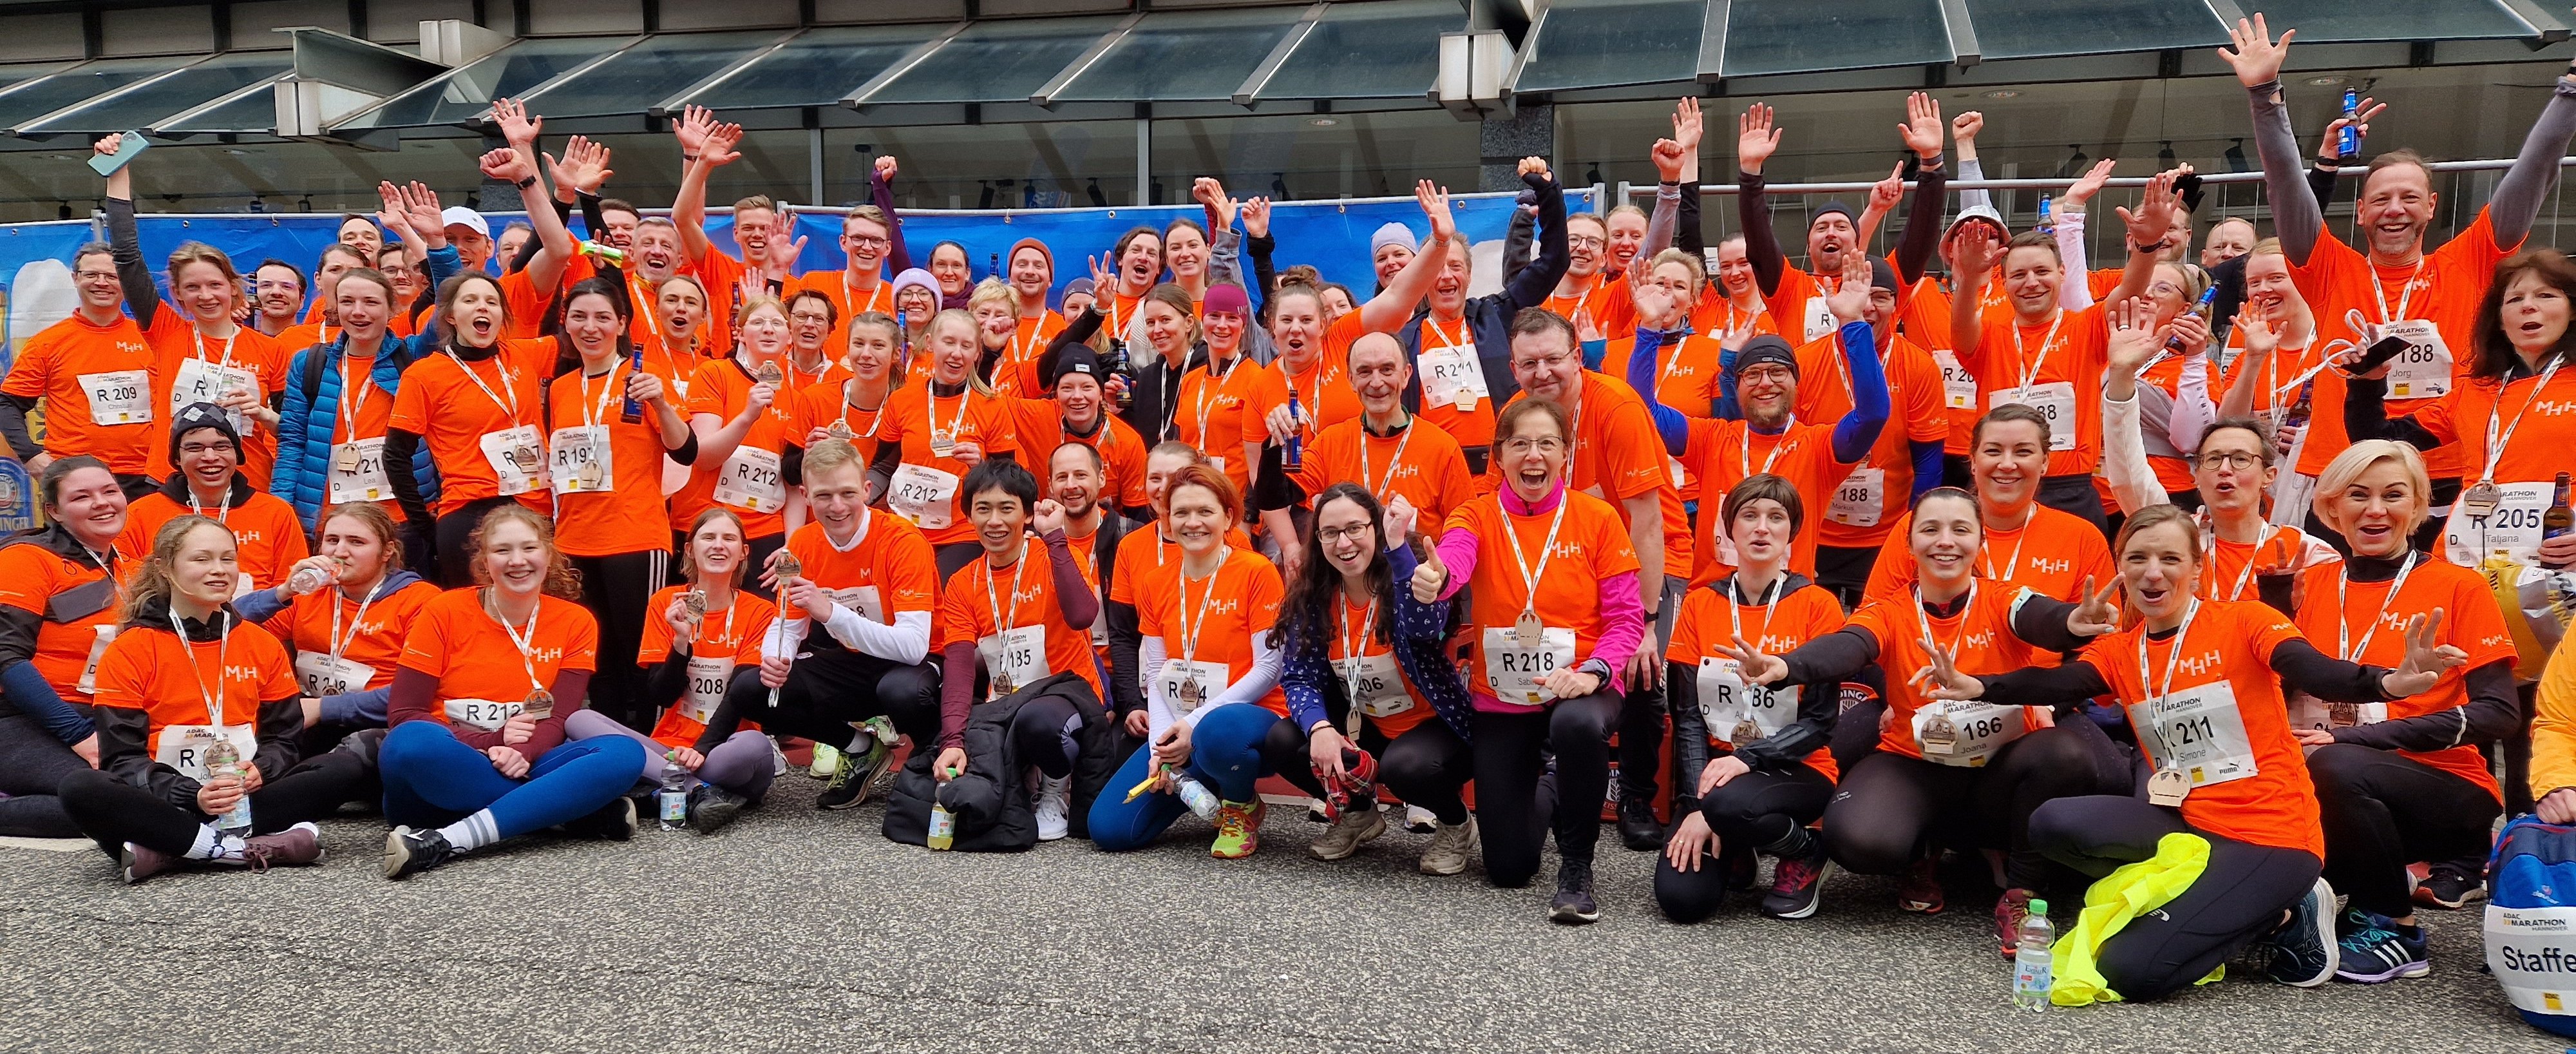 Mitarbeitende der MHH stehen für ein Gruppenfoto nach dem Hannover Marathon zusammen. Alle tragen orange farbene Trikots. 